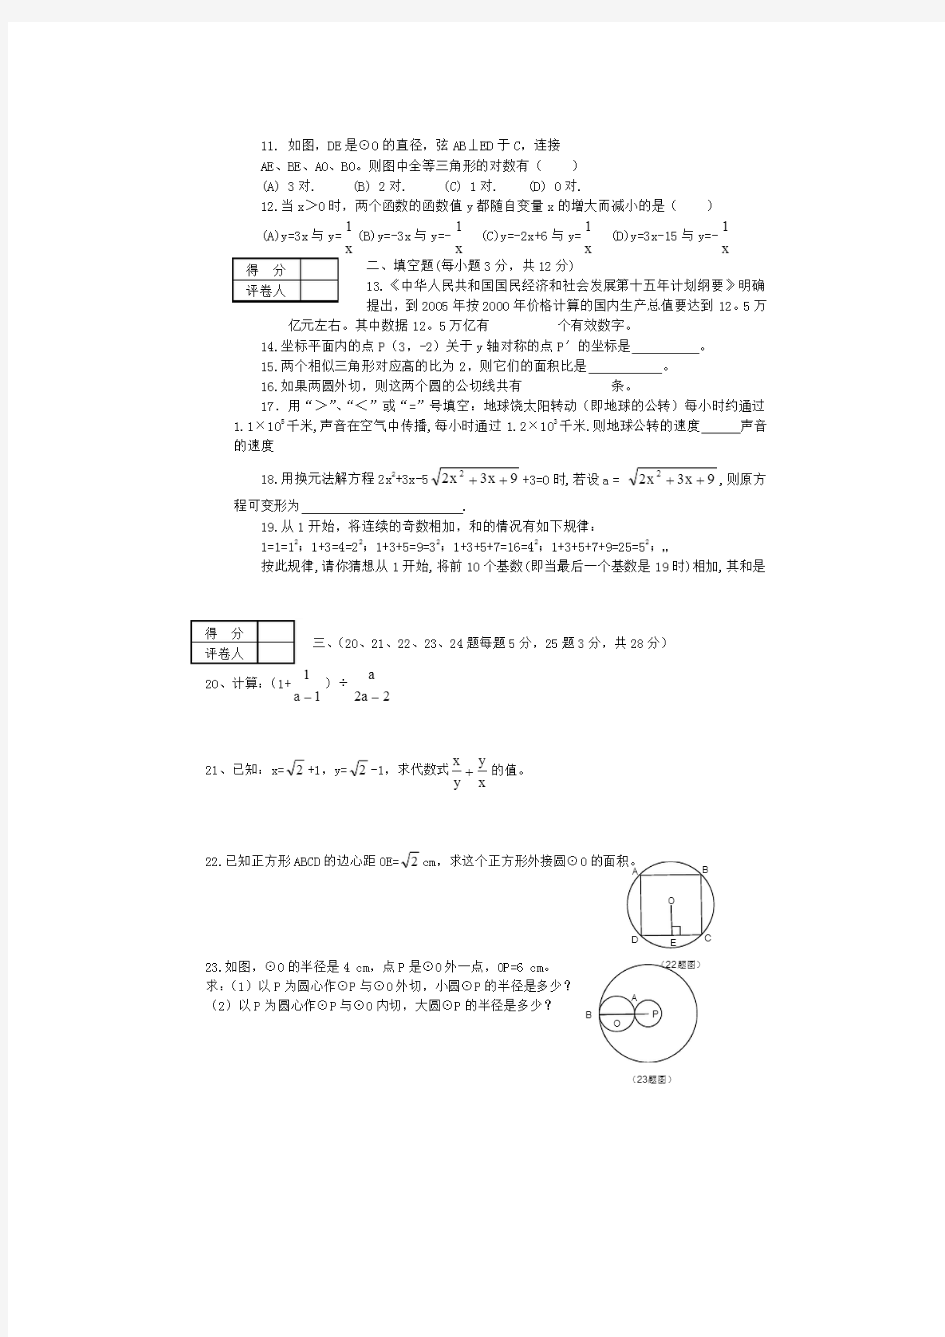 2001年宜昌市中考数学试题(含答案)